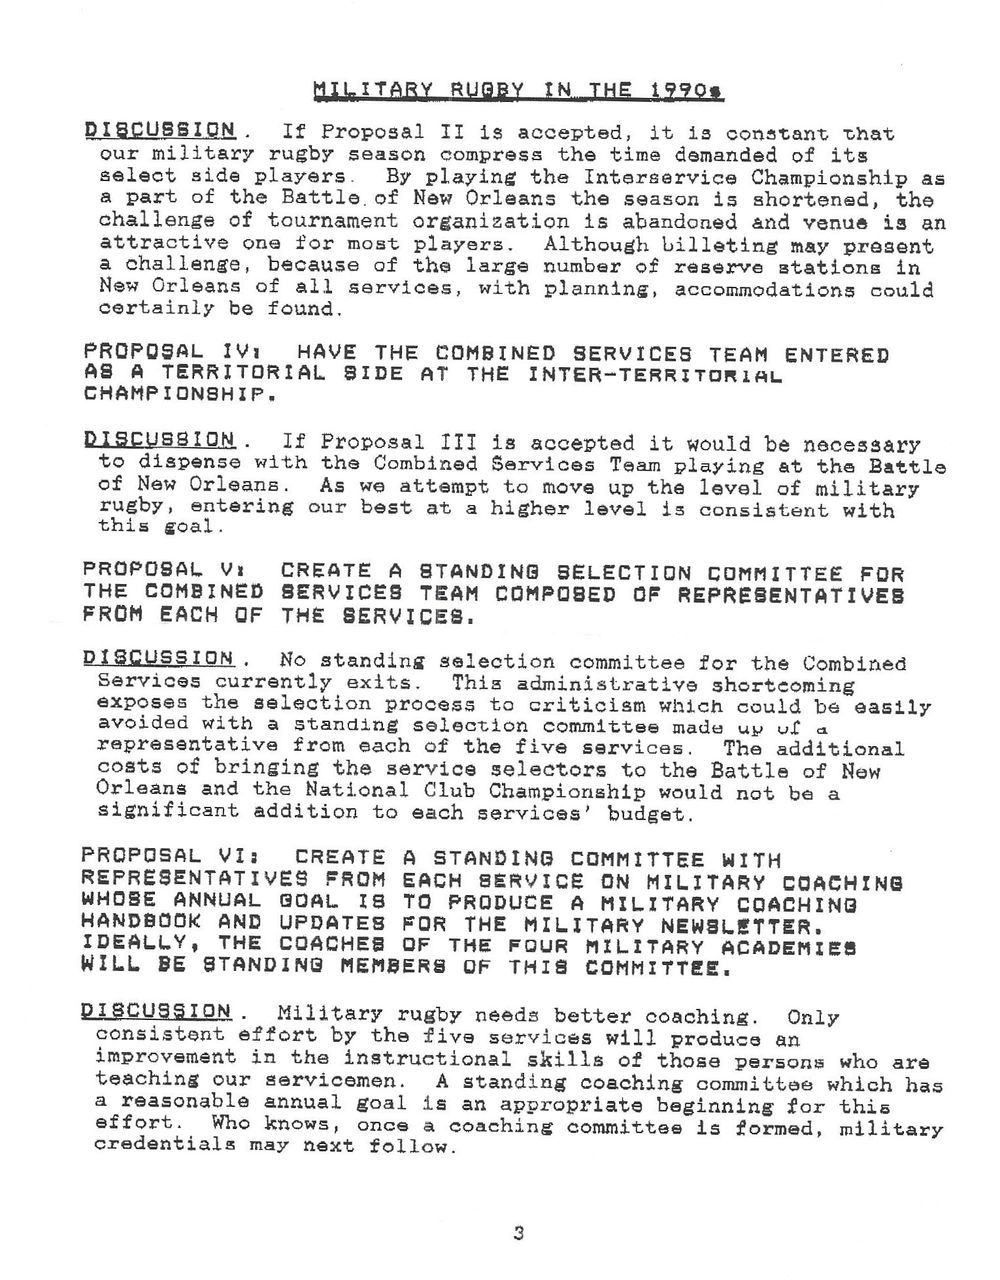 1990 agenda 5.jpg